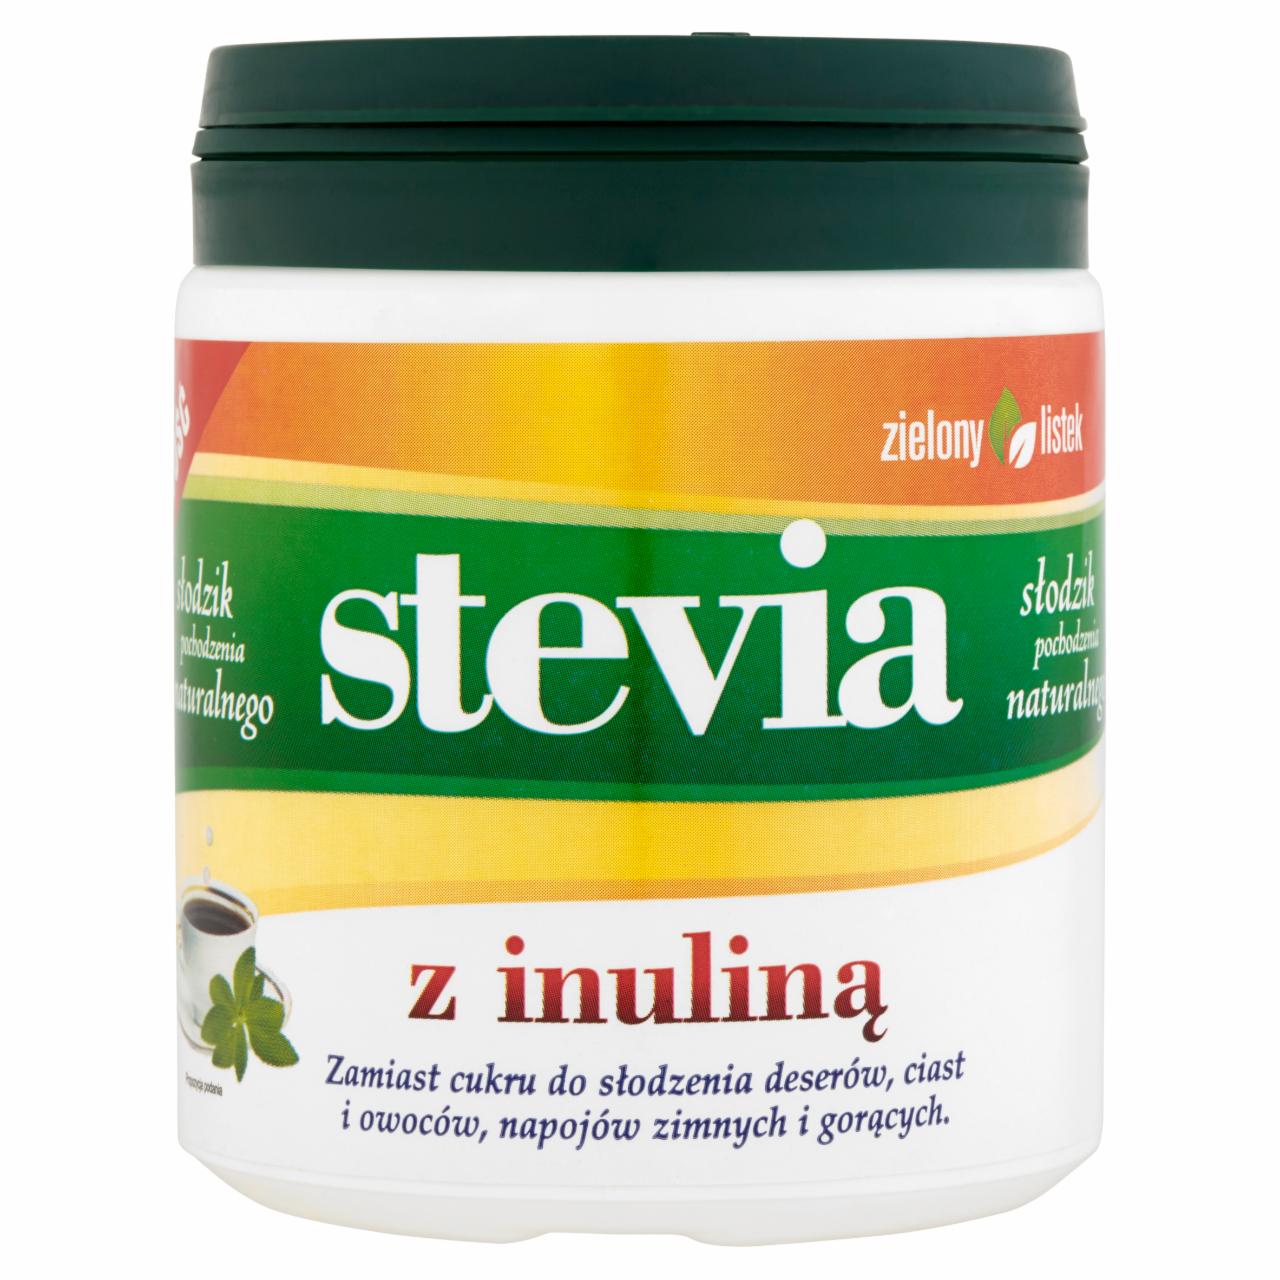 Zdjęcia - Zielony listek Słodzik stołowy Stevia z inuliną 140 g